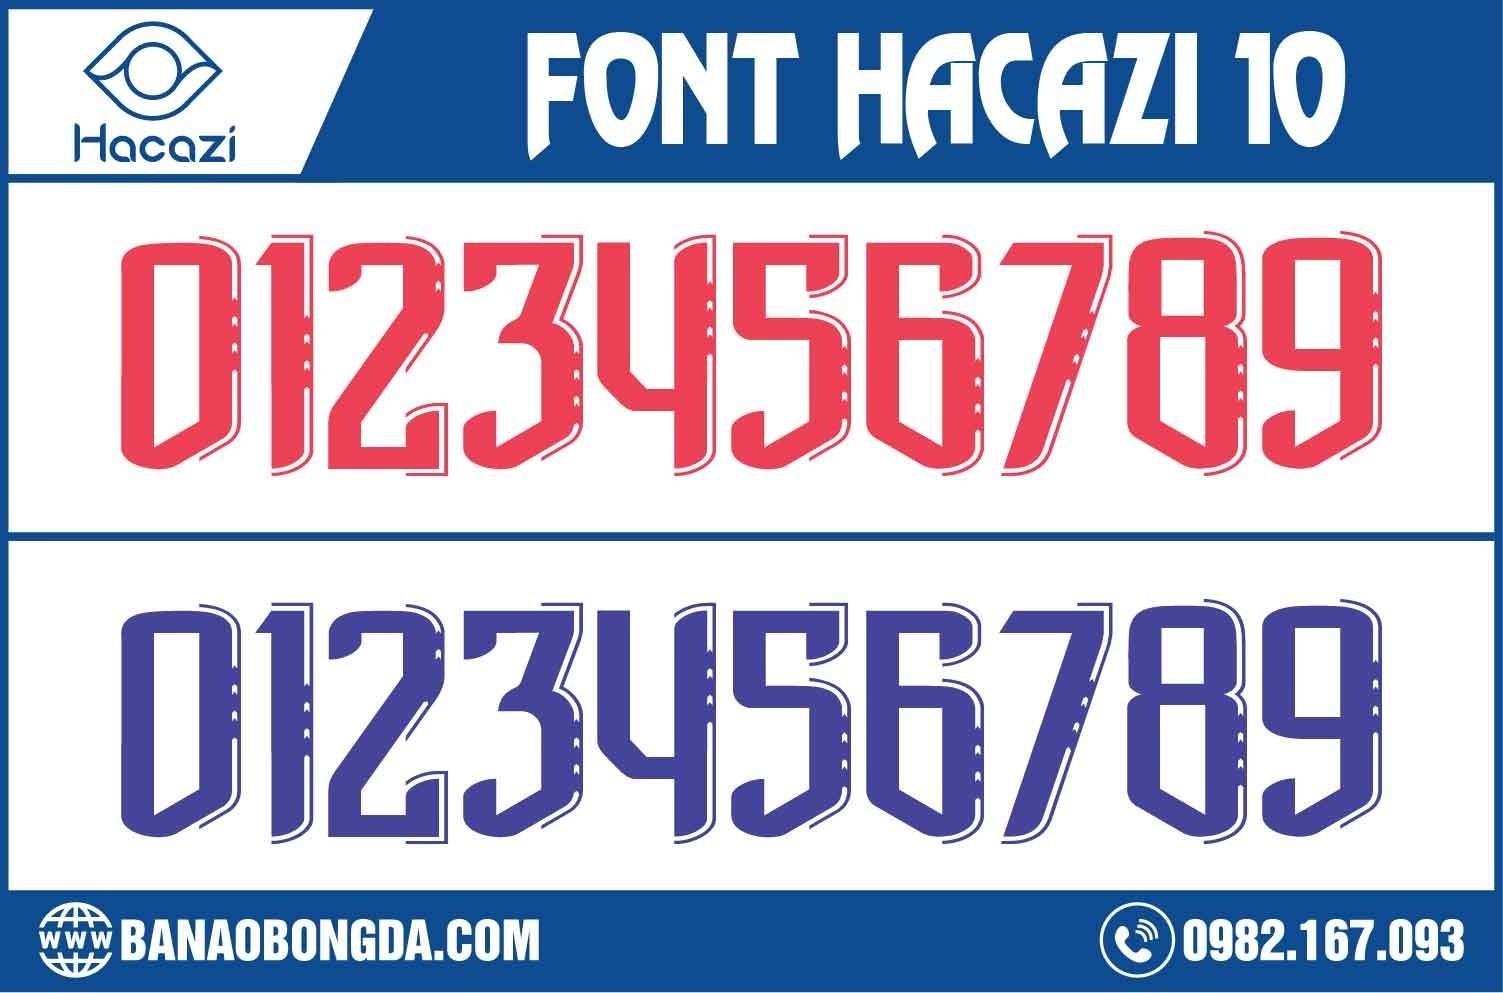  Đây chính là một trong những bộ font số mới được phát hành tại Shop Hacazi Sport. Thiết kế mới lạ sáng tạo tinh tế trong từng đường nét cùng với gam màu đỏ nhạt và tím nhạt. Sẽ thật đáng tiếc nếu bạn bỏ lỡ mẫu font số áo bóng đá 10 này vào bộ sưu tập các mẫu font số độc đáo của mình.